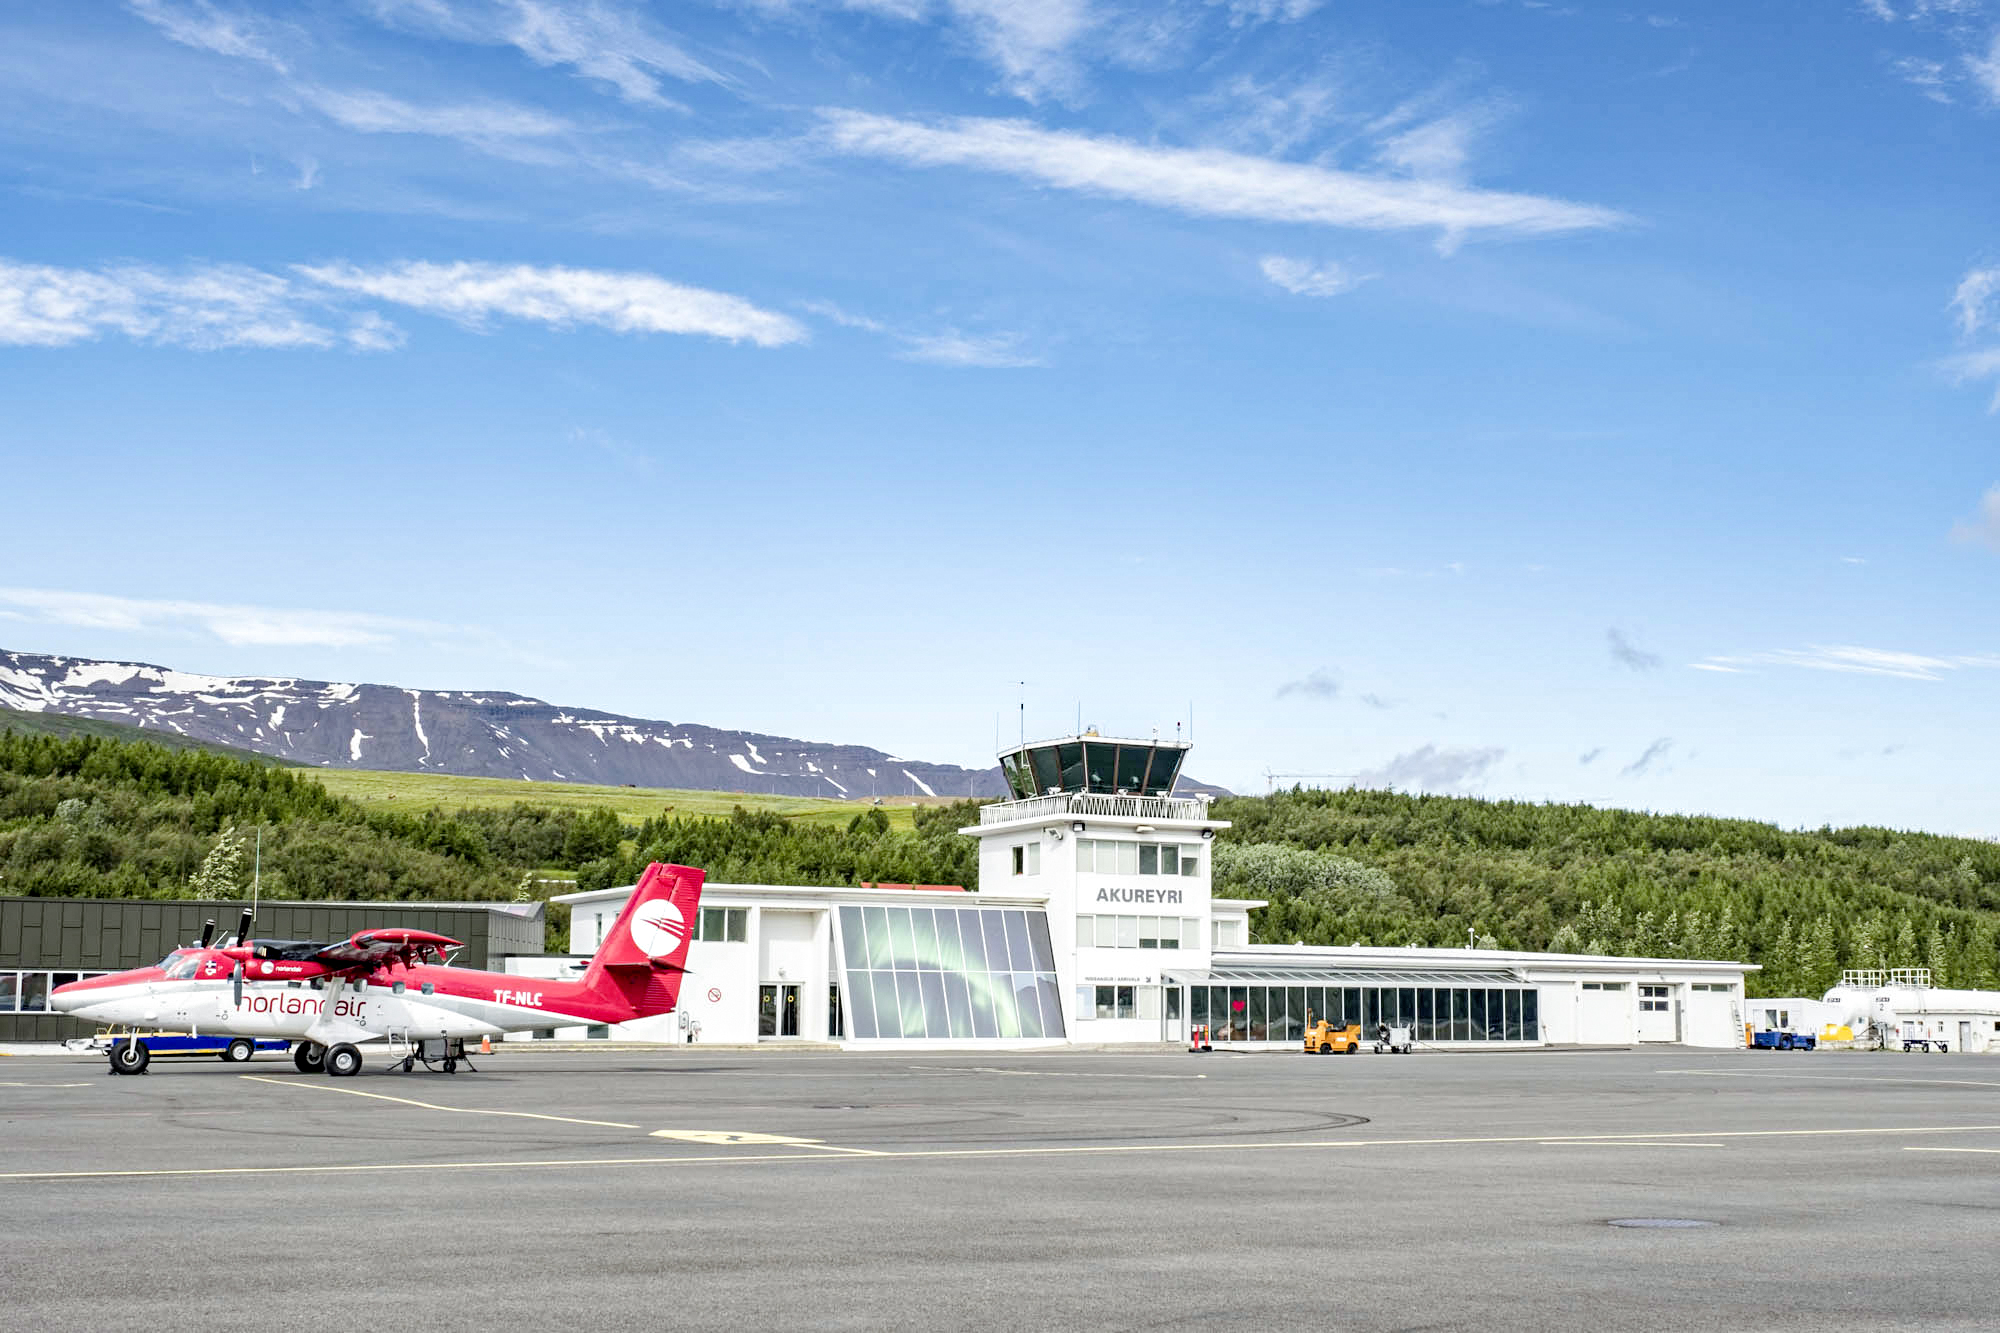 Die Twin Otter ist eines der Brot-und-Butter-Flugzeuge für die kurzen Strecken innerhalb Islands. Von Akureyri bedient Norlandair beispielsweise aber auch Nerlerit Inaat (Constable Point) in Grönland.